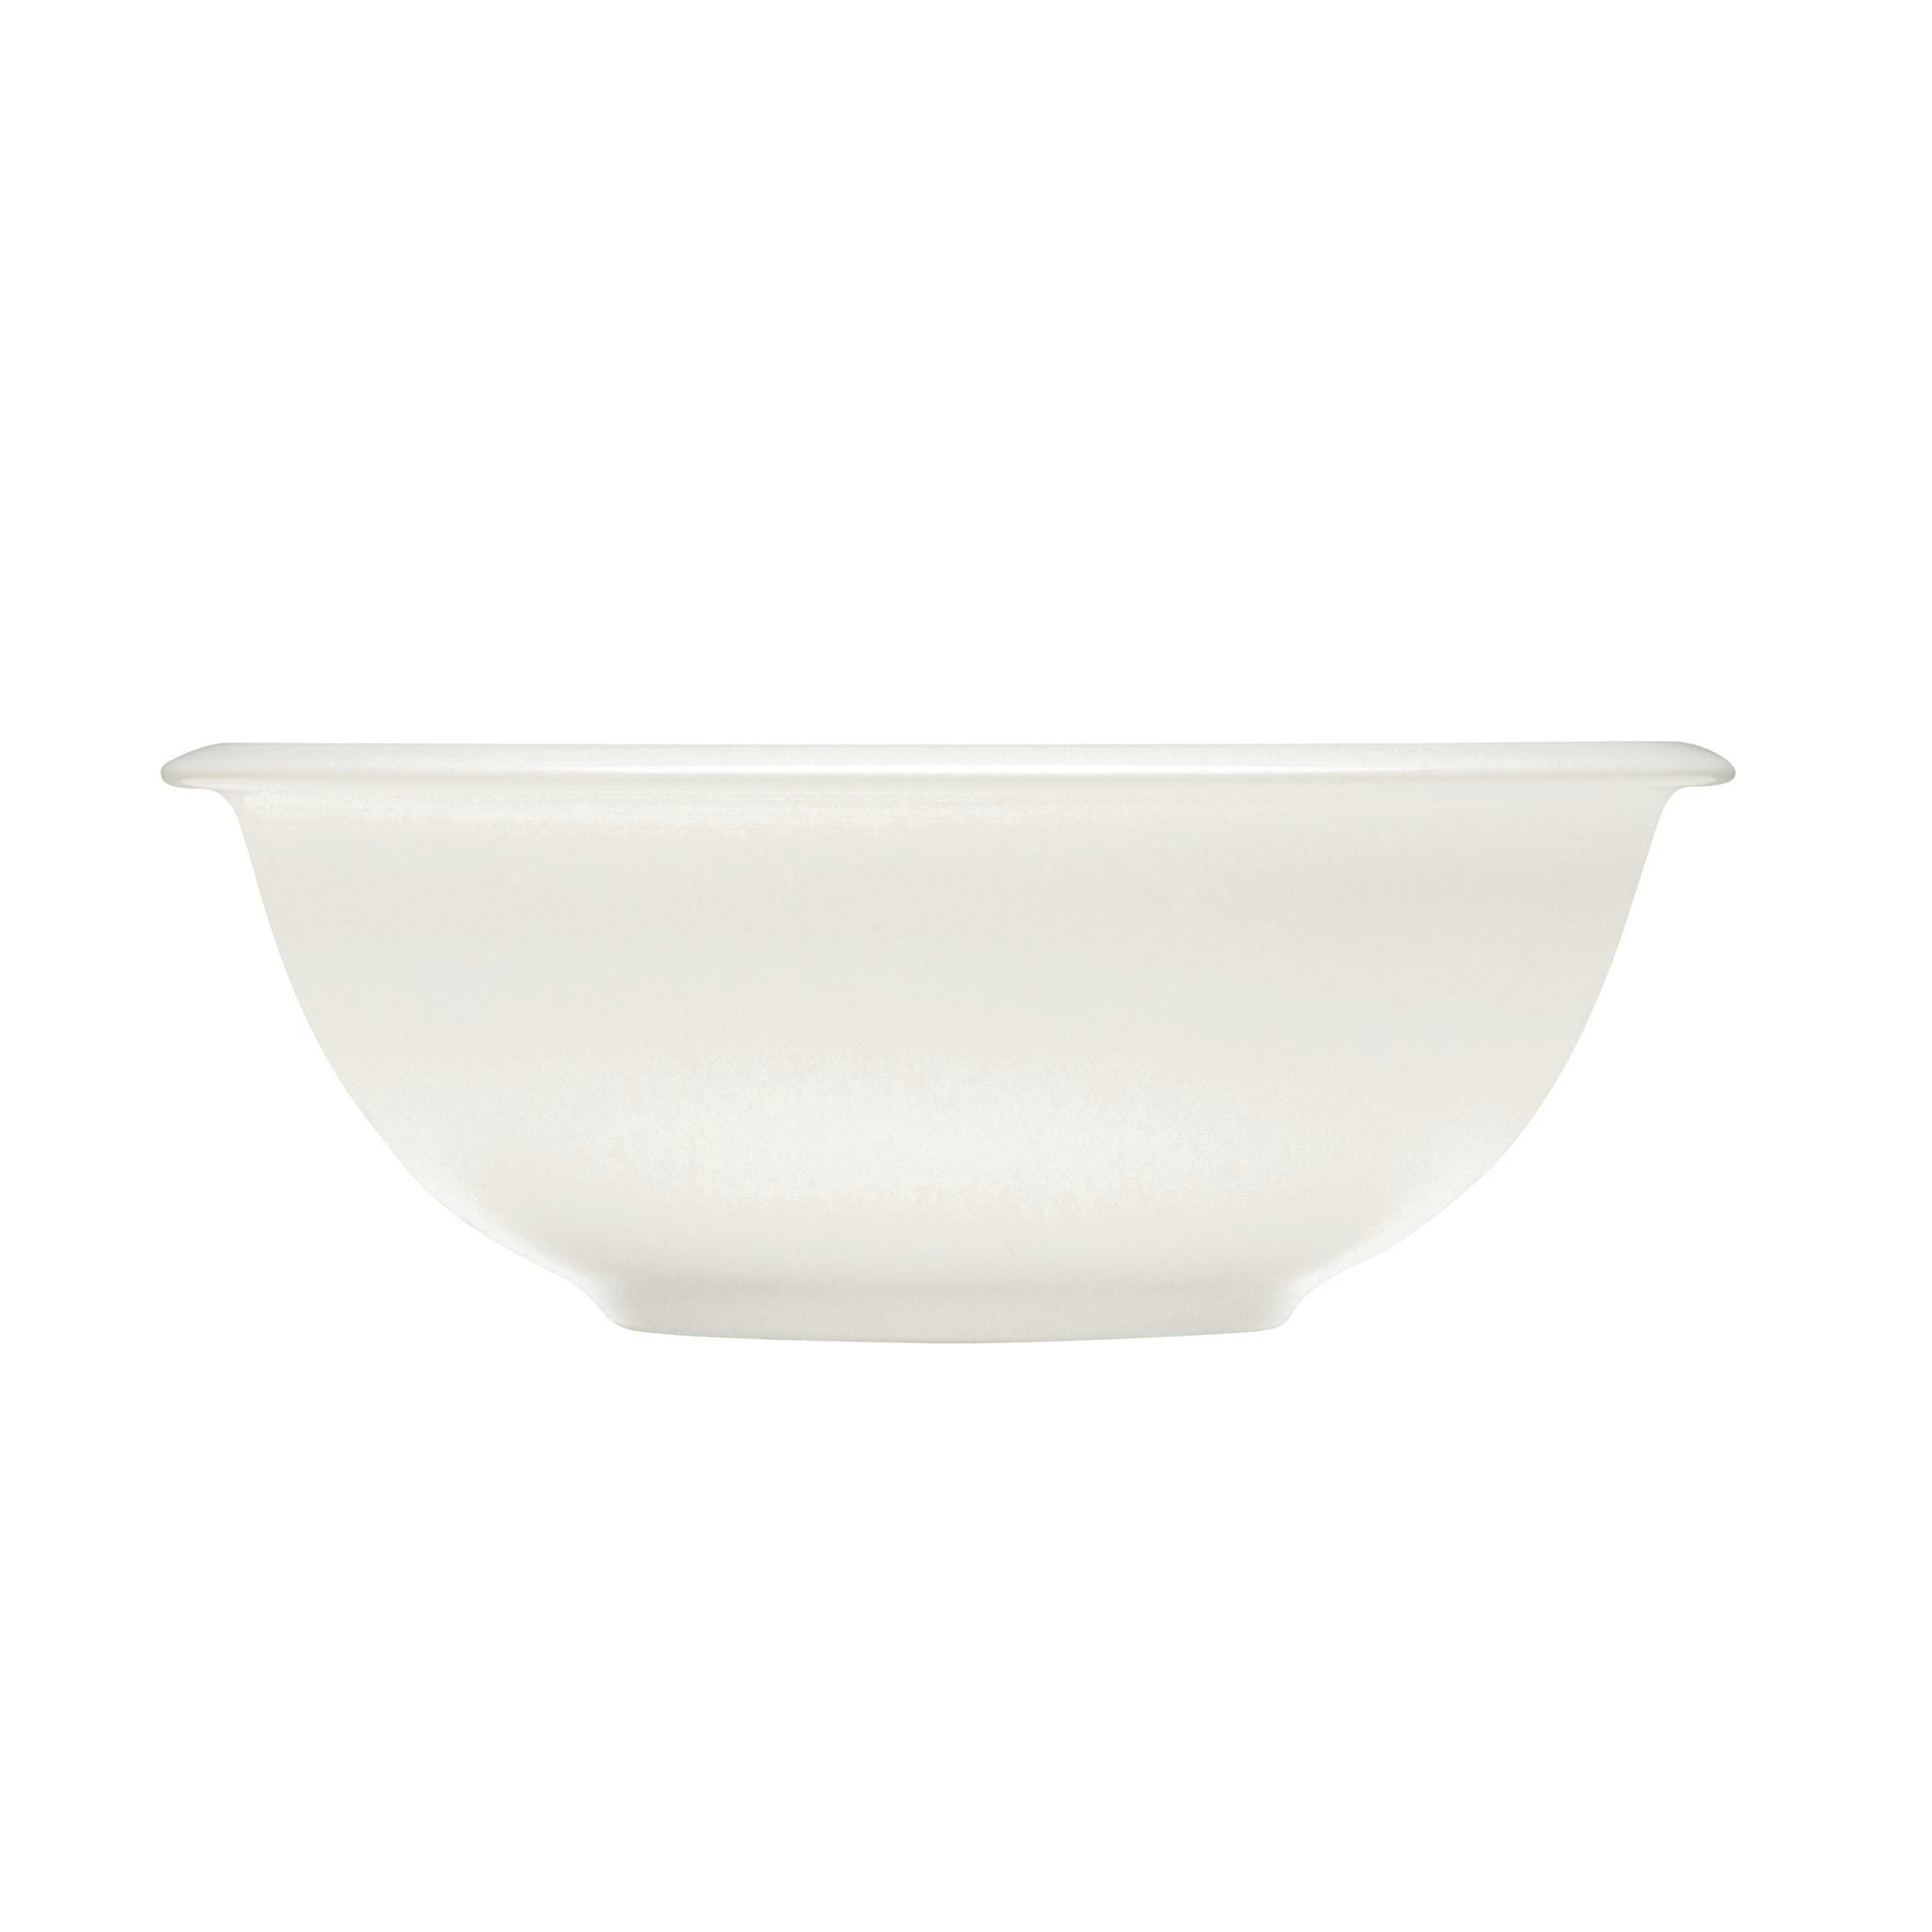 Raami Bowl by Iittala